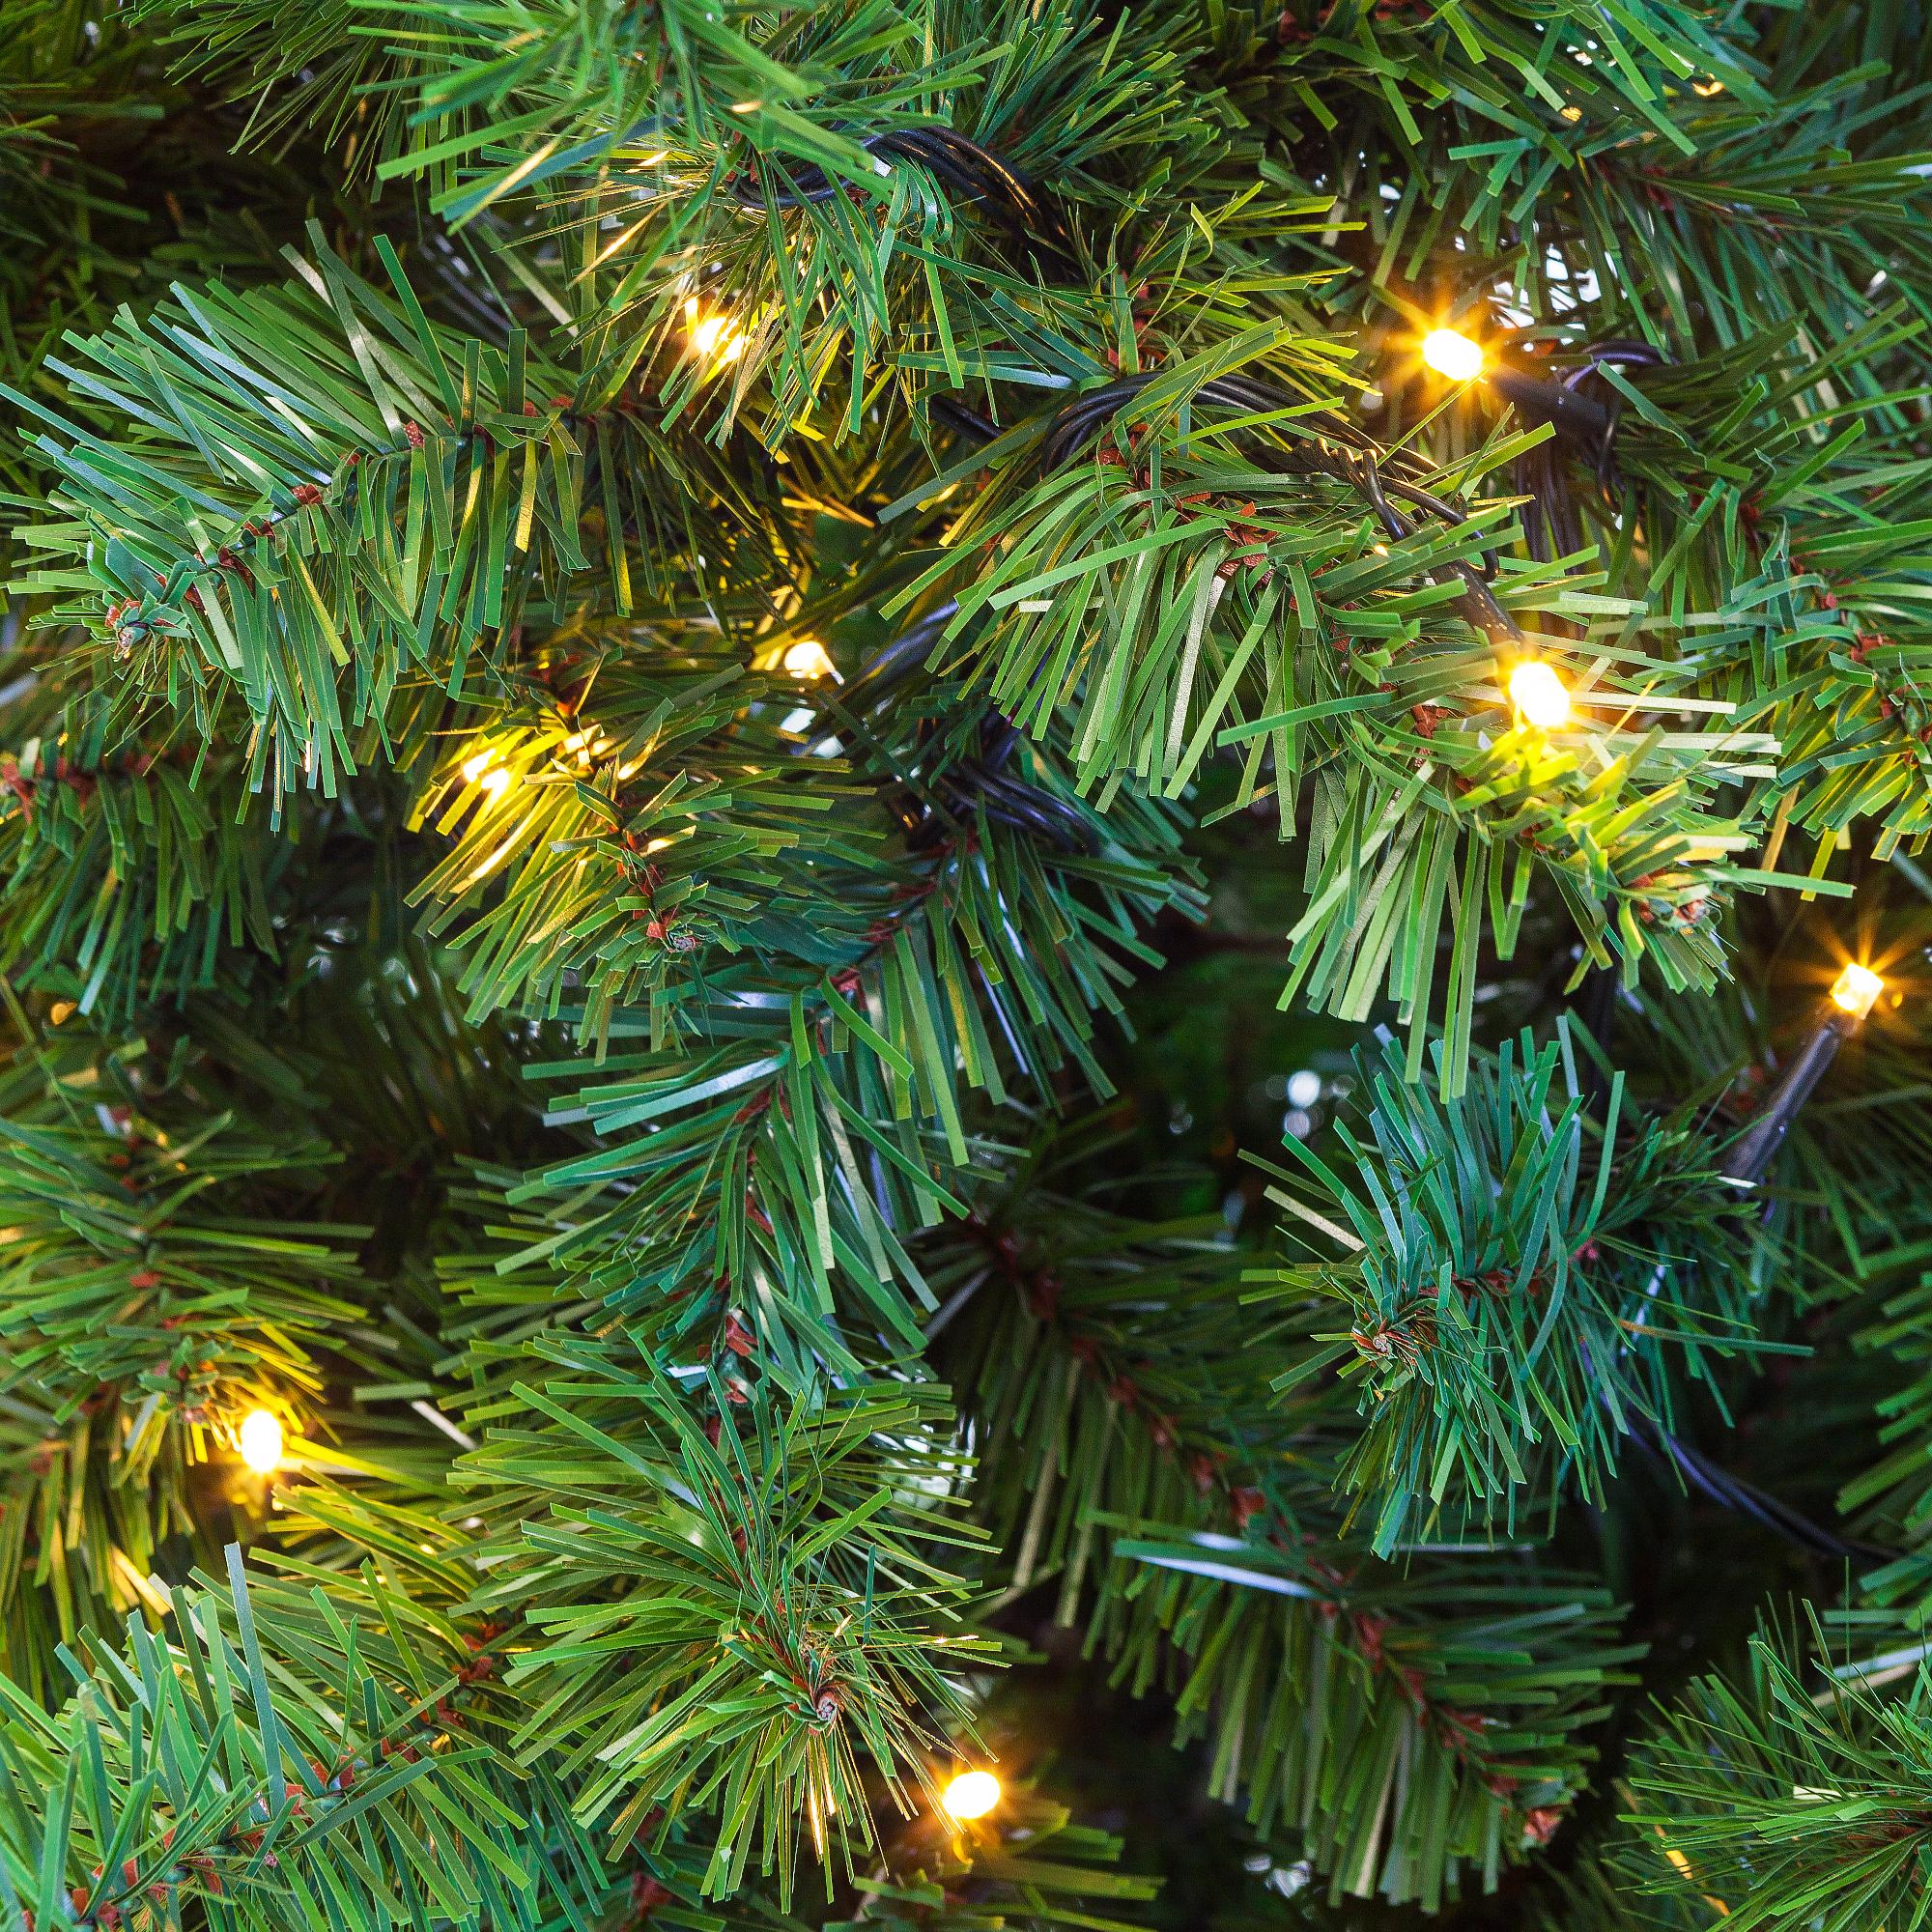 Kerstboom Excellent Trees® LED Stavanger Green 180 cm met verlichting - nu met Gratis Opbergtas t.w.v. € 24.95